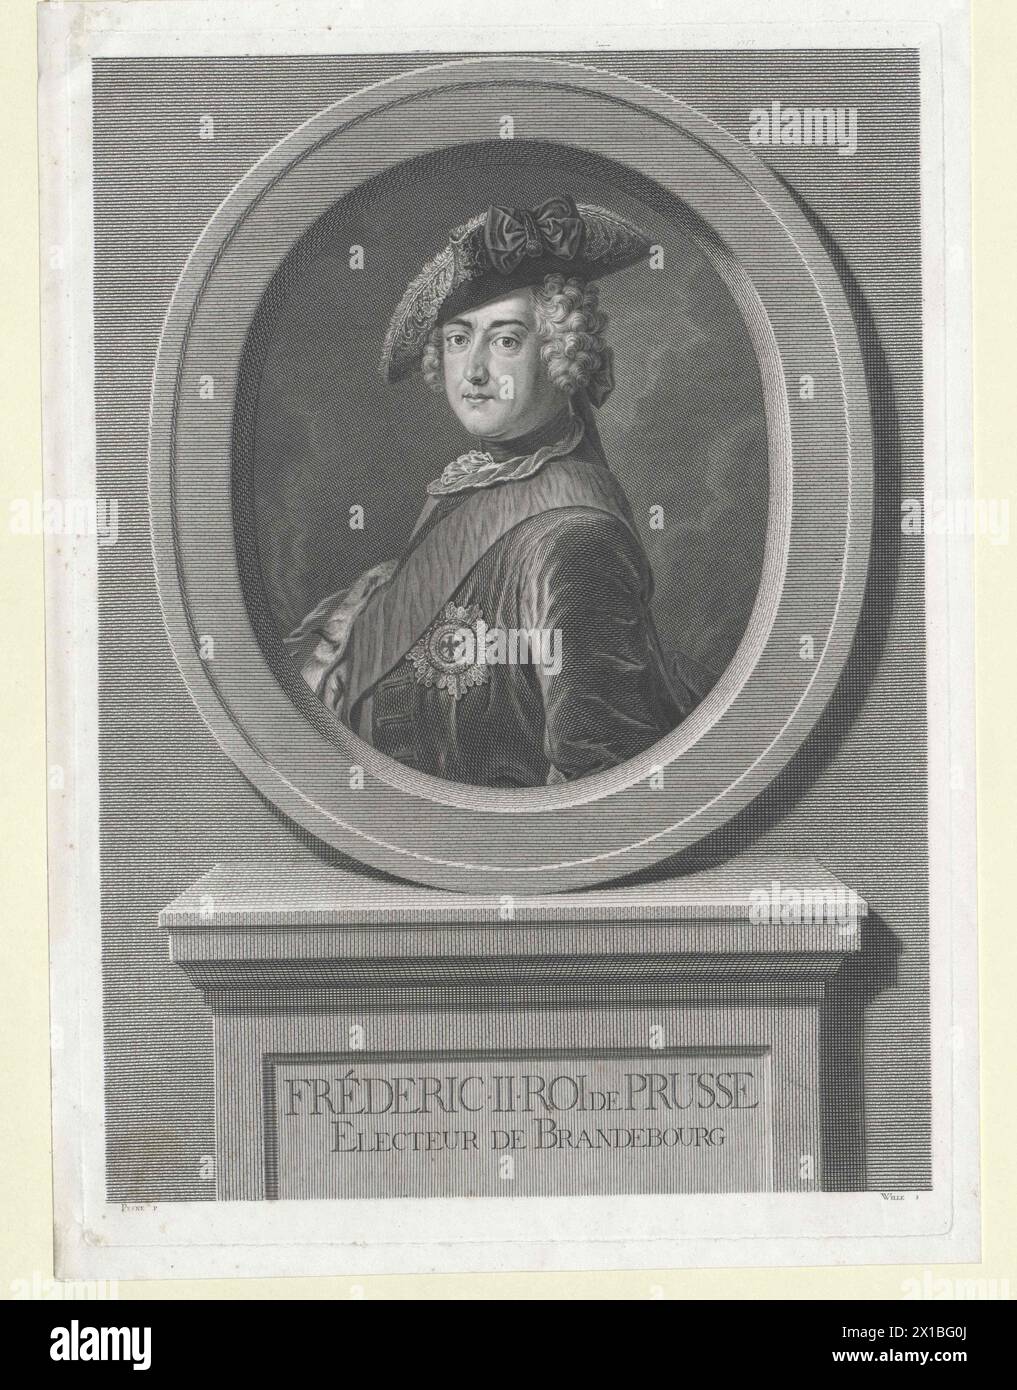 Frédéric II, Roi de Prusse, - 19830422 PD53802 - Rechteinfo : droits gérés (RM) Banque D'Images